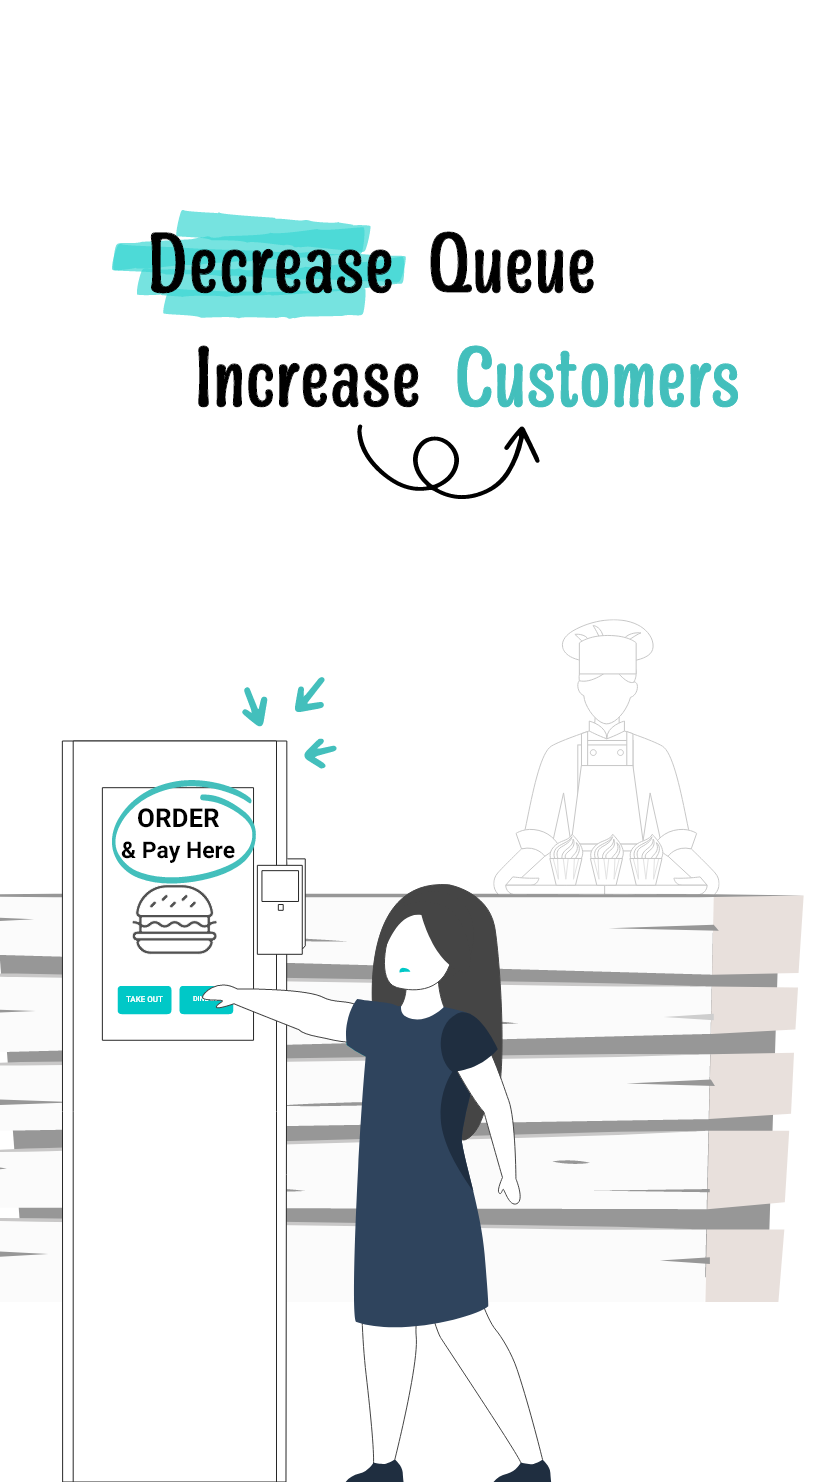 Decrease Queue Increase Customers